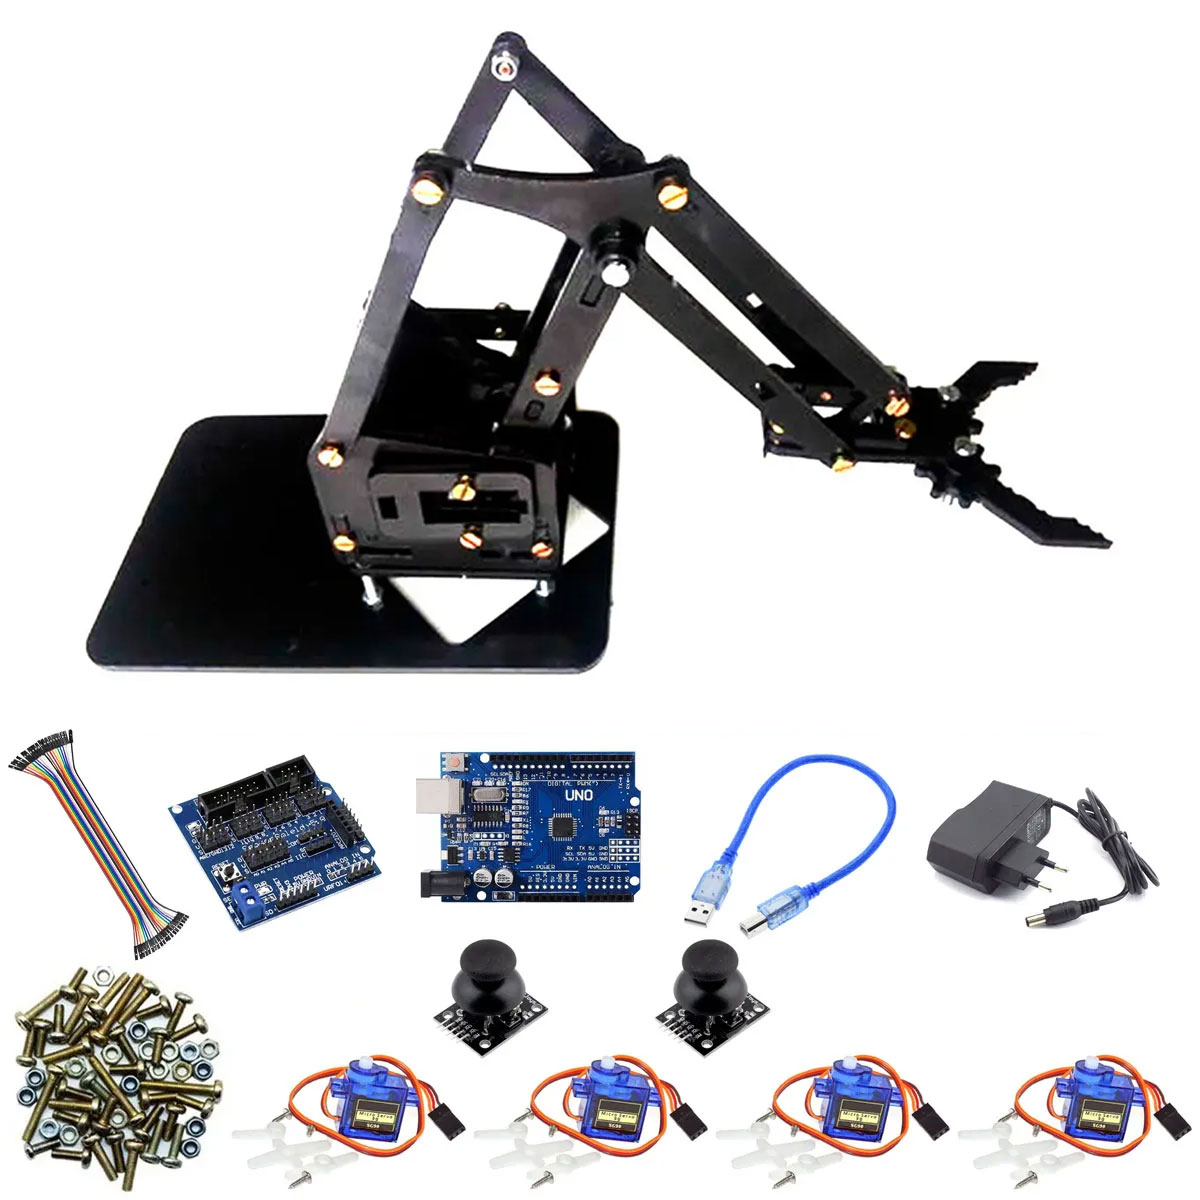 Kit para montar: Braço Robótico para Arduino e Controle via Joystick